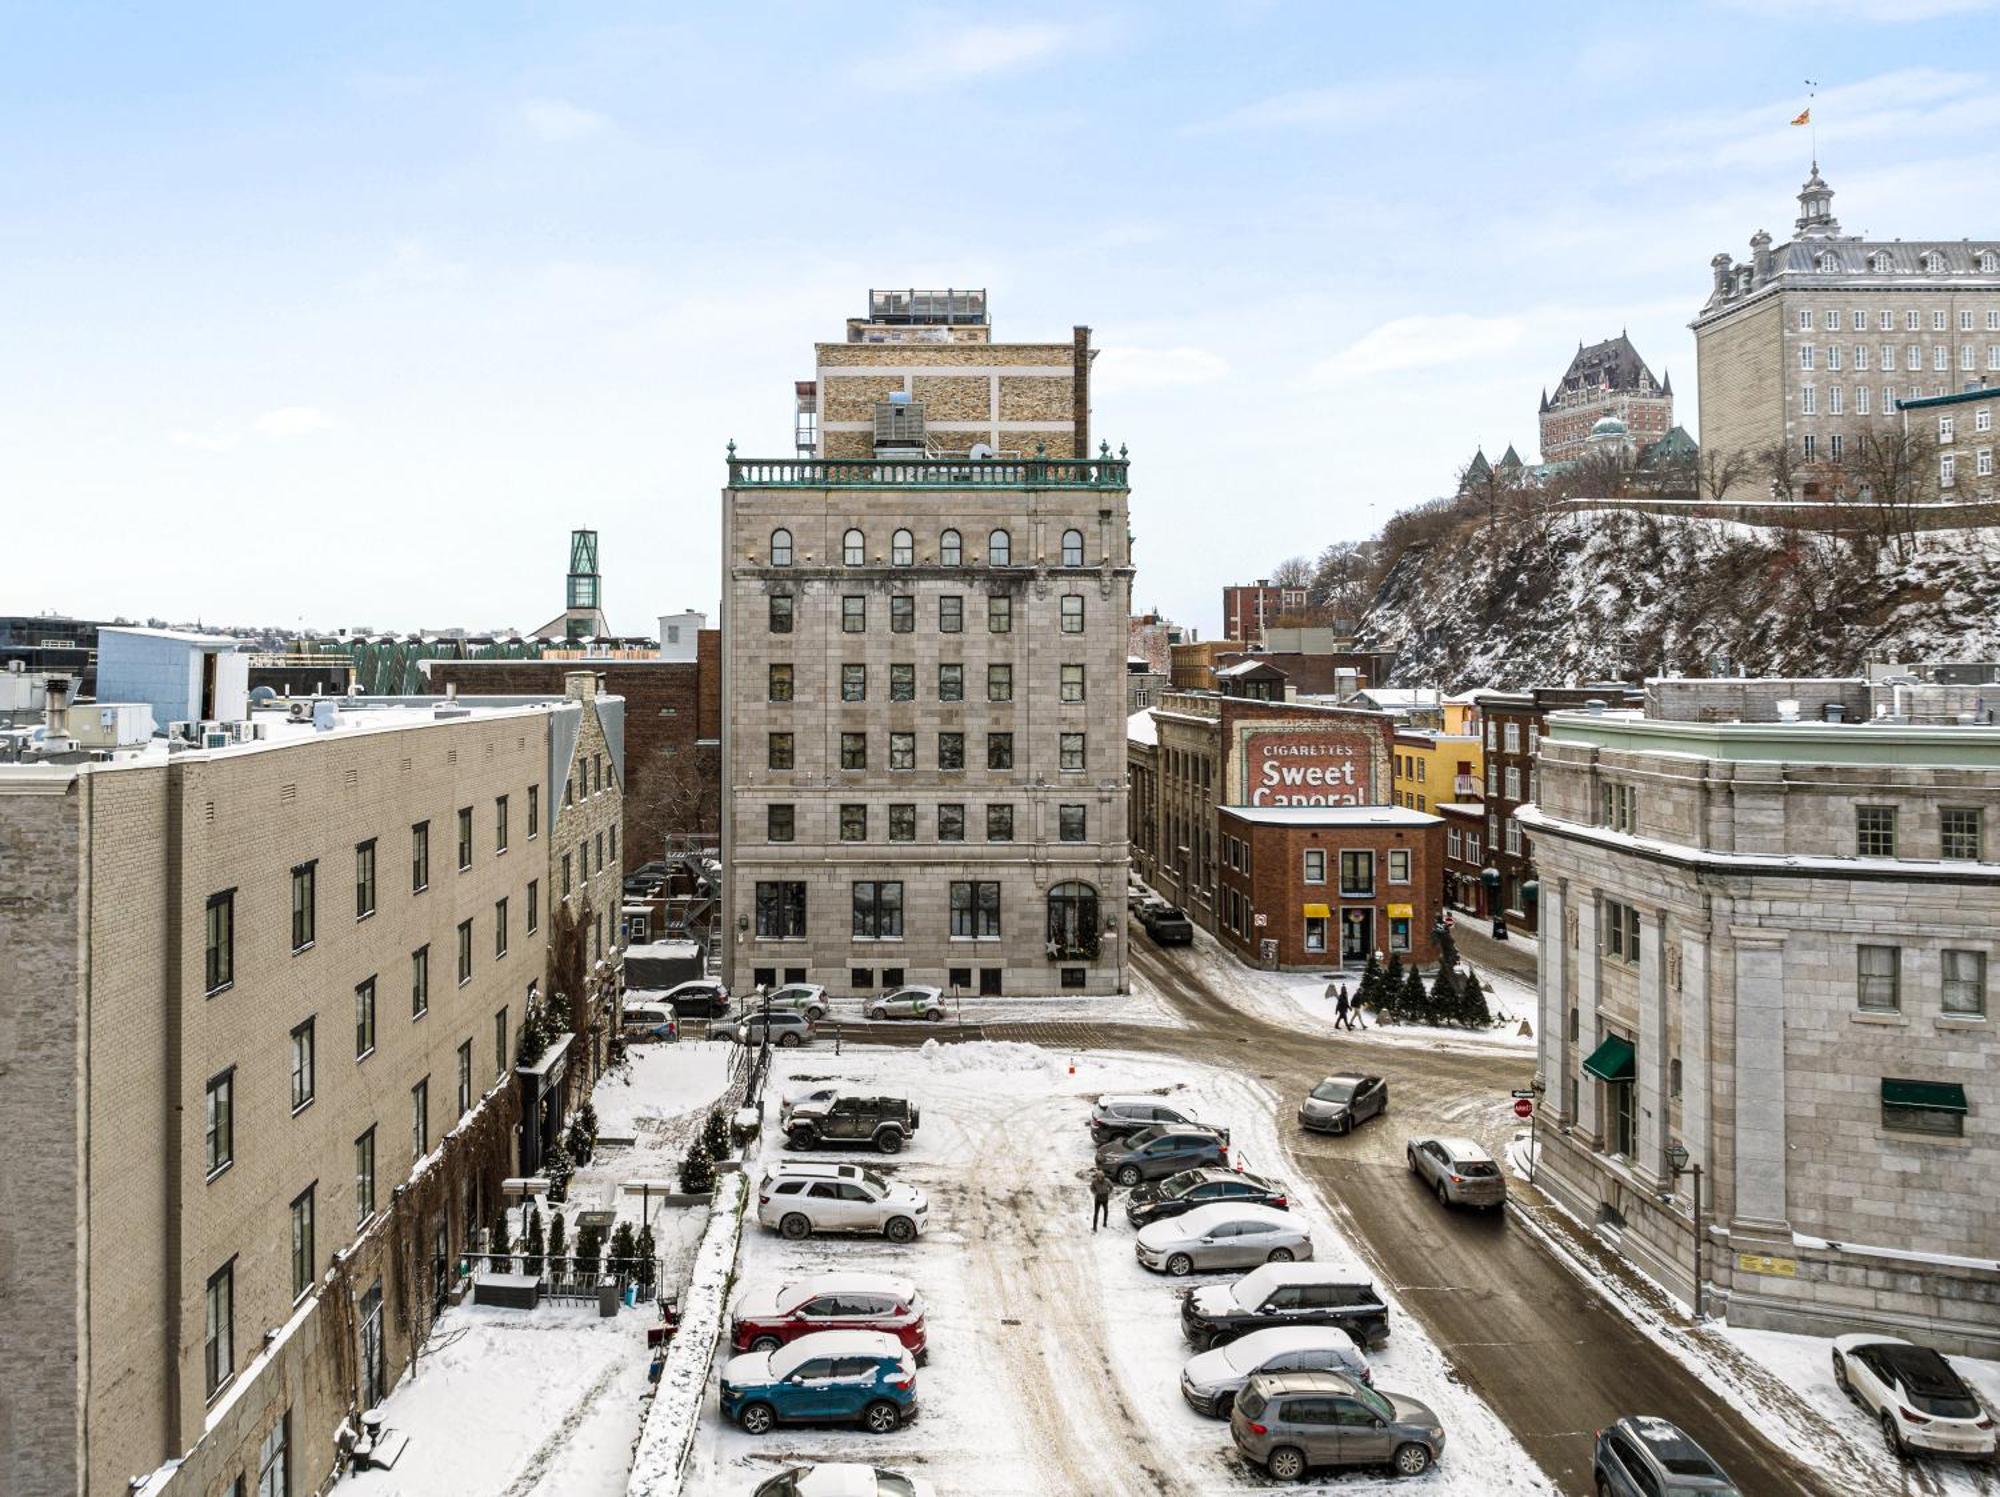 Hotel Port-Royal Québec Eksteriør bilde